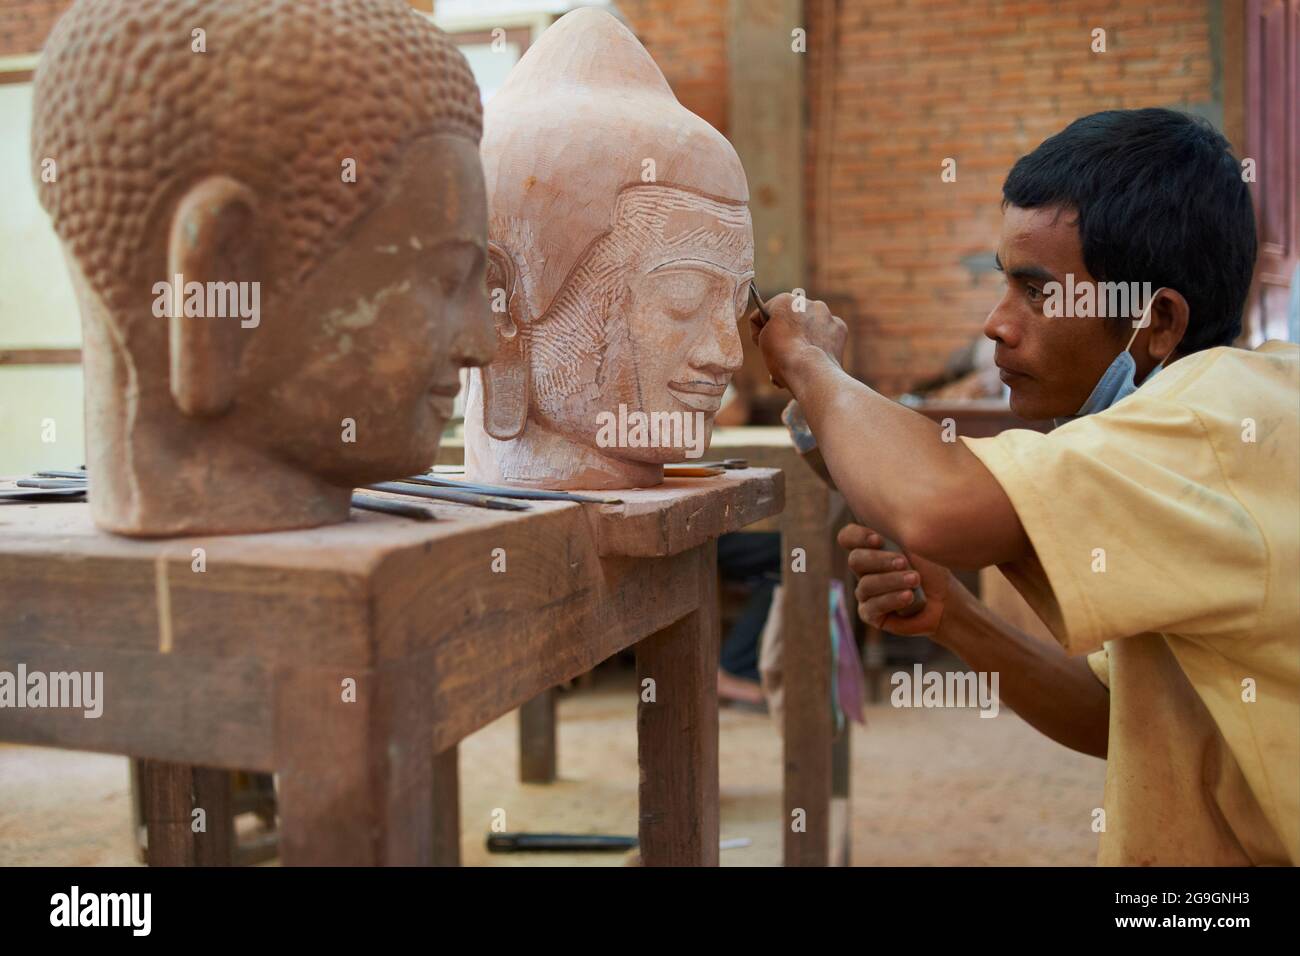 Sudeste de Asia, Camboya, provincia de Siem Reap, ciudad de Siem Reap, talleres de artesanos de Angkor, estatua de buda Foto de stock